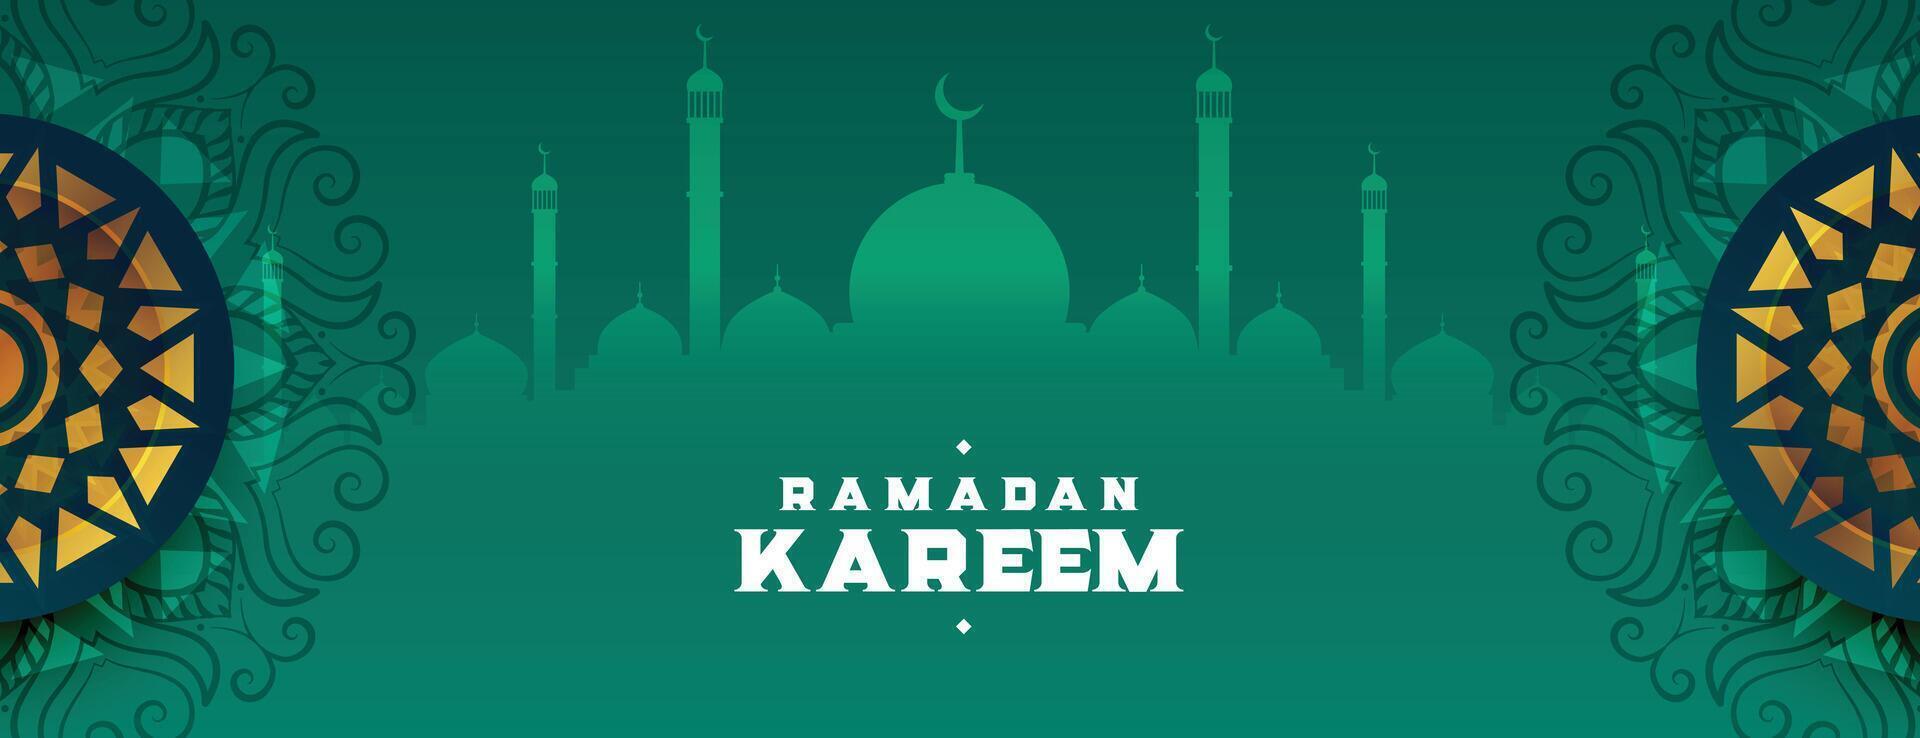 décoratif Ramadan kareem islamique bannière avec arabesque décoration vecteur